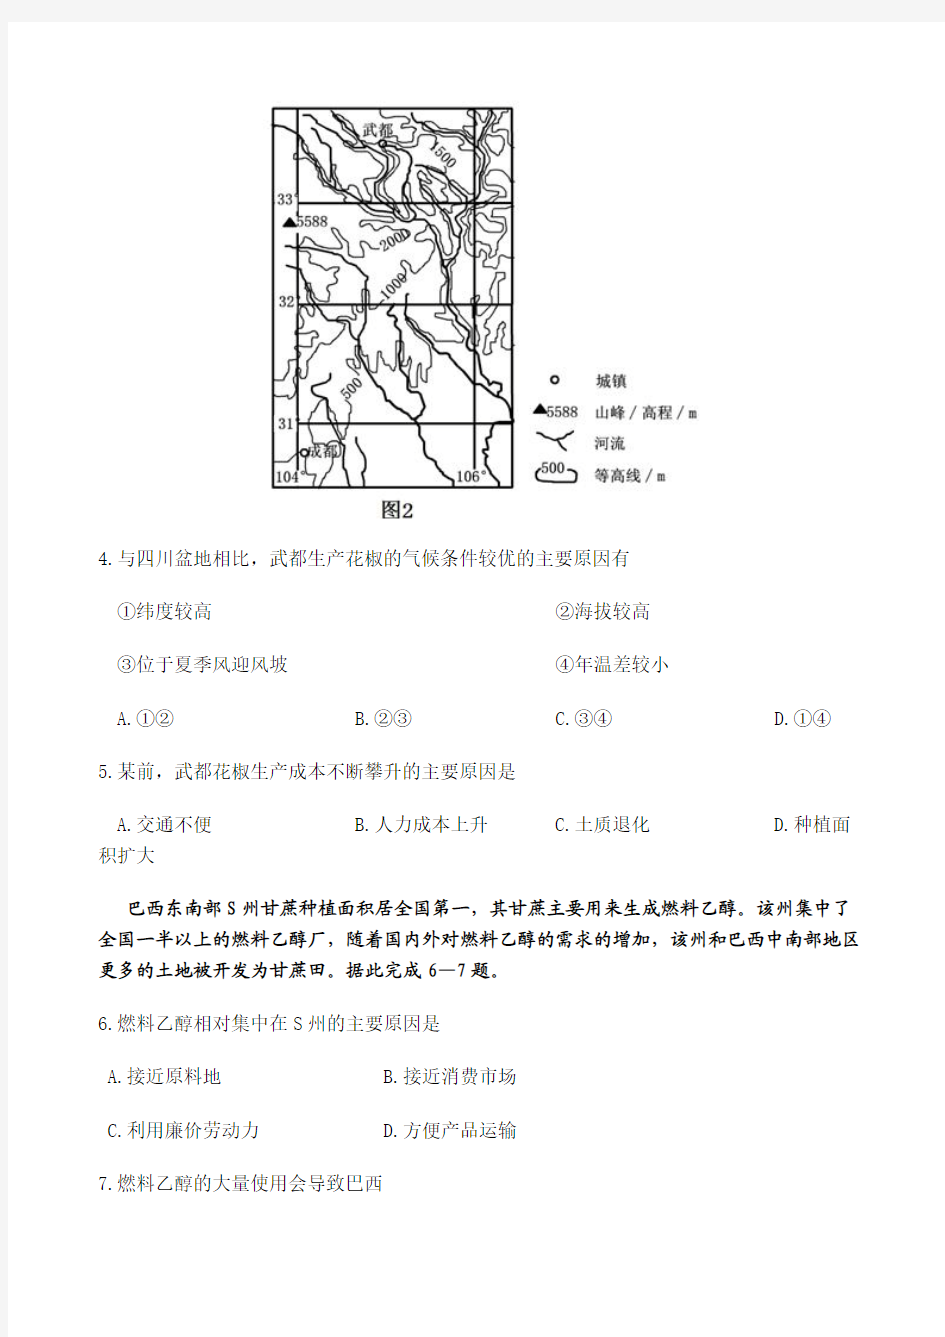 2013年高考文综地理(海南卷)